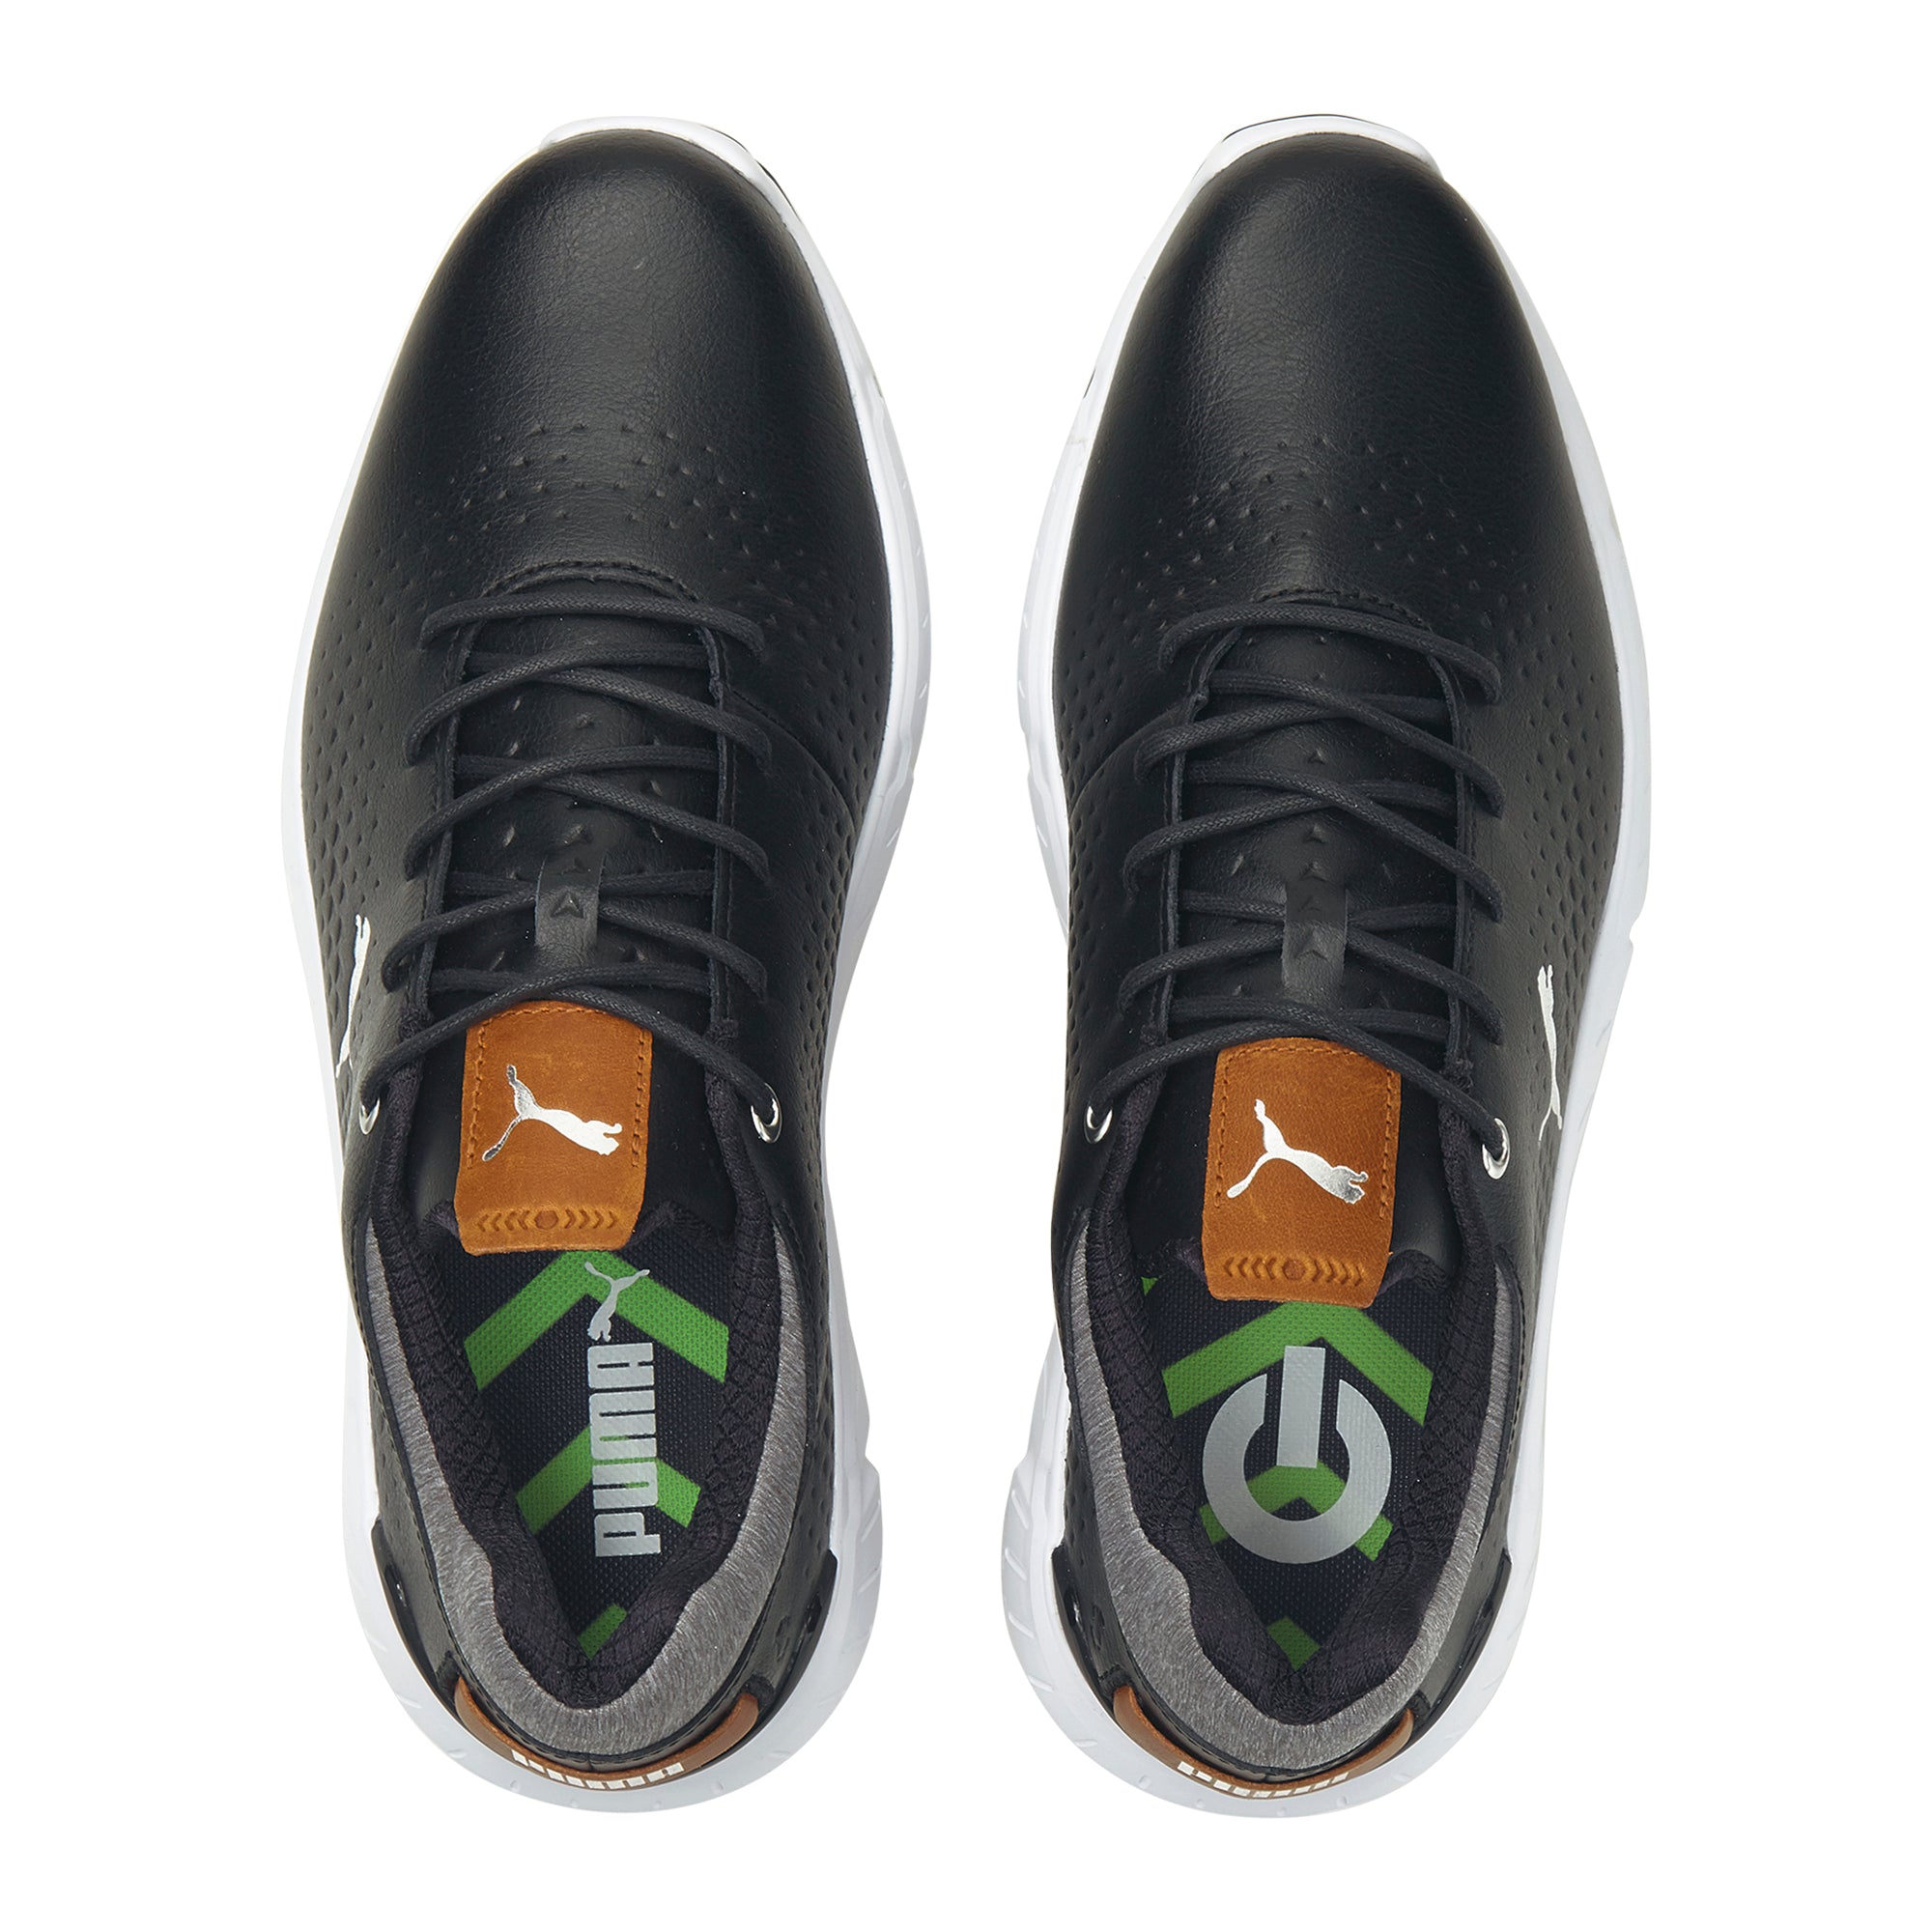 puma-ignite-articulate-leather-golf-shoes-376155-puma-black-silver-02